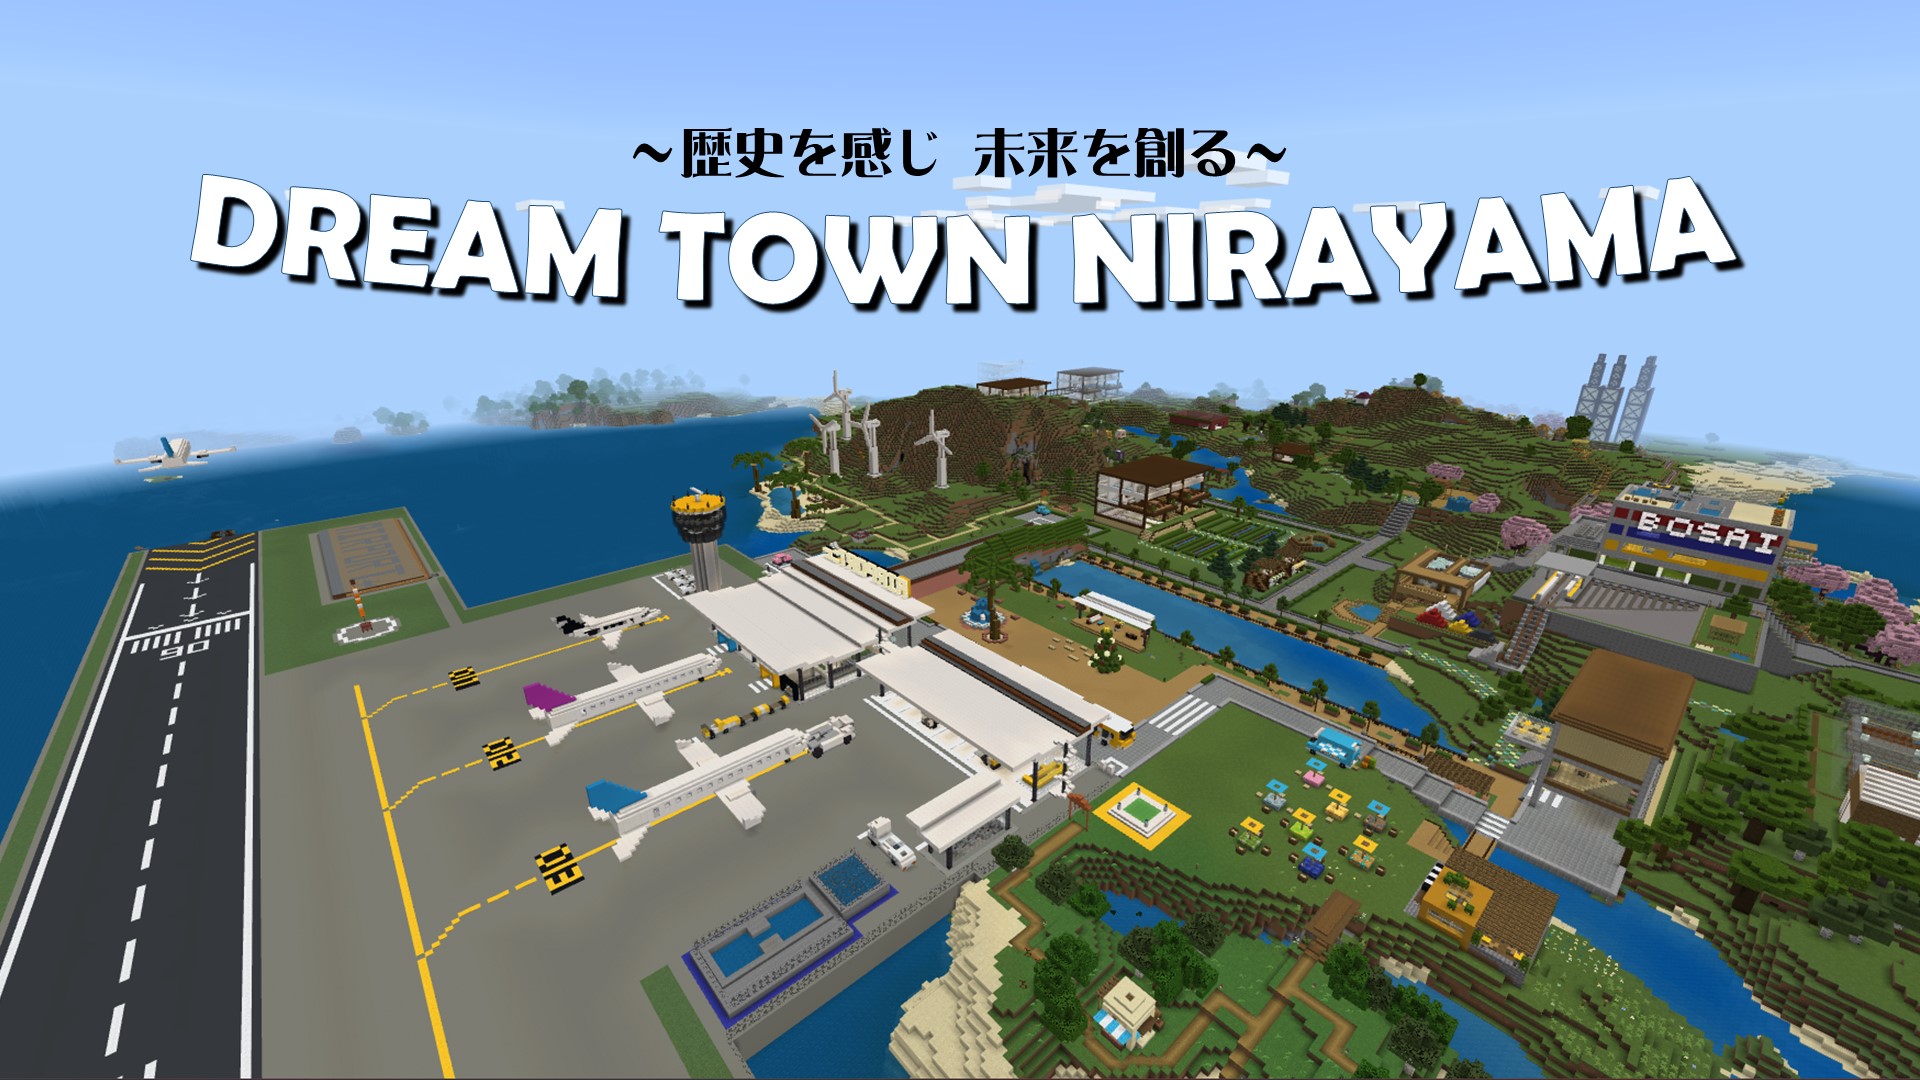 歴史を感じ未来を創る Dream town Nirayama